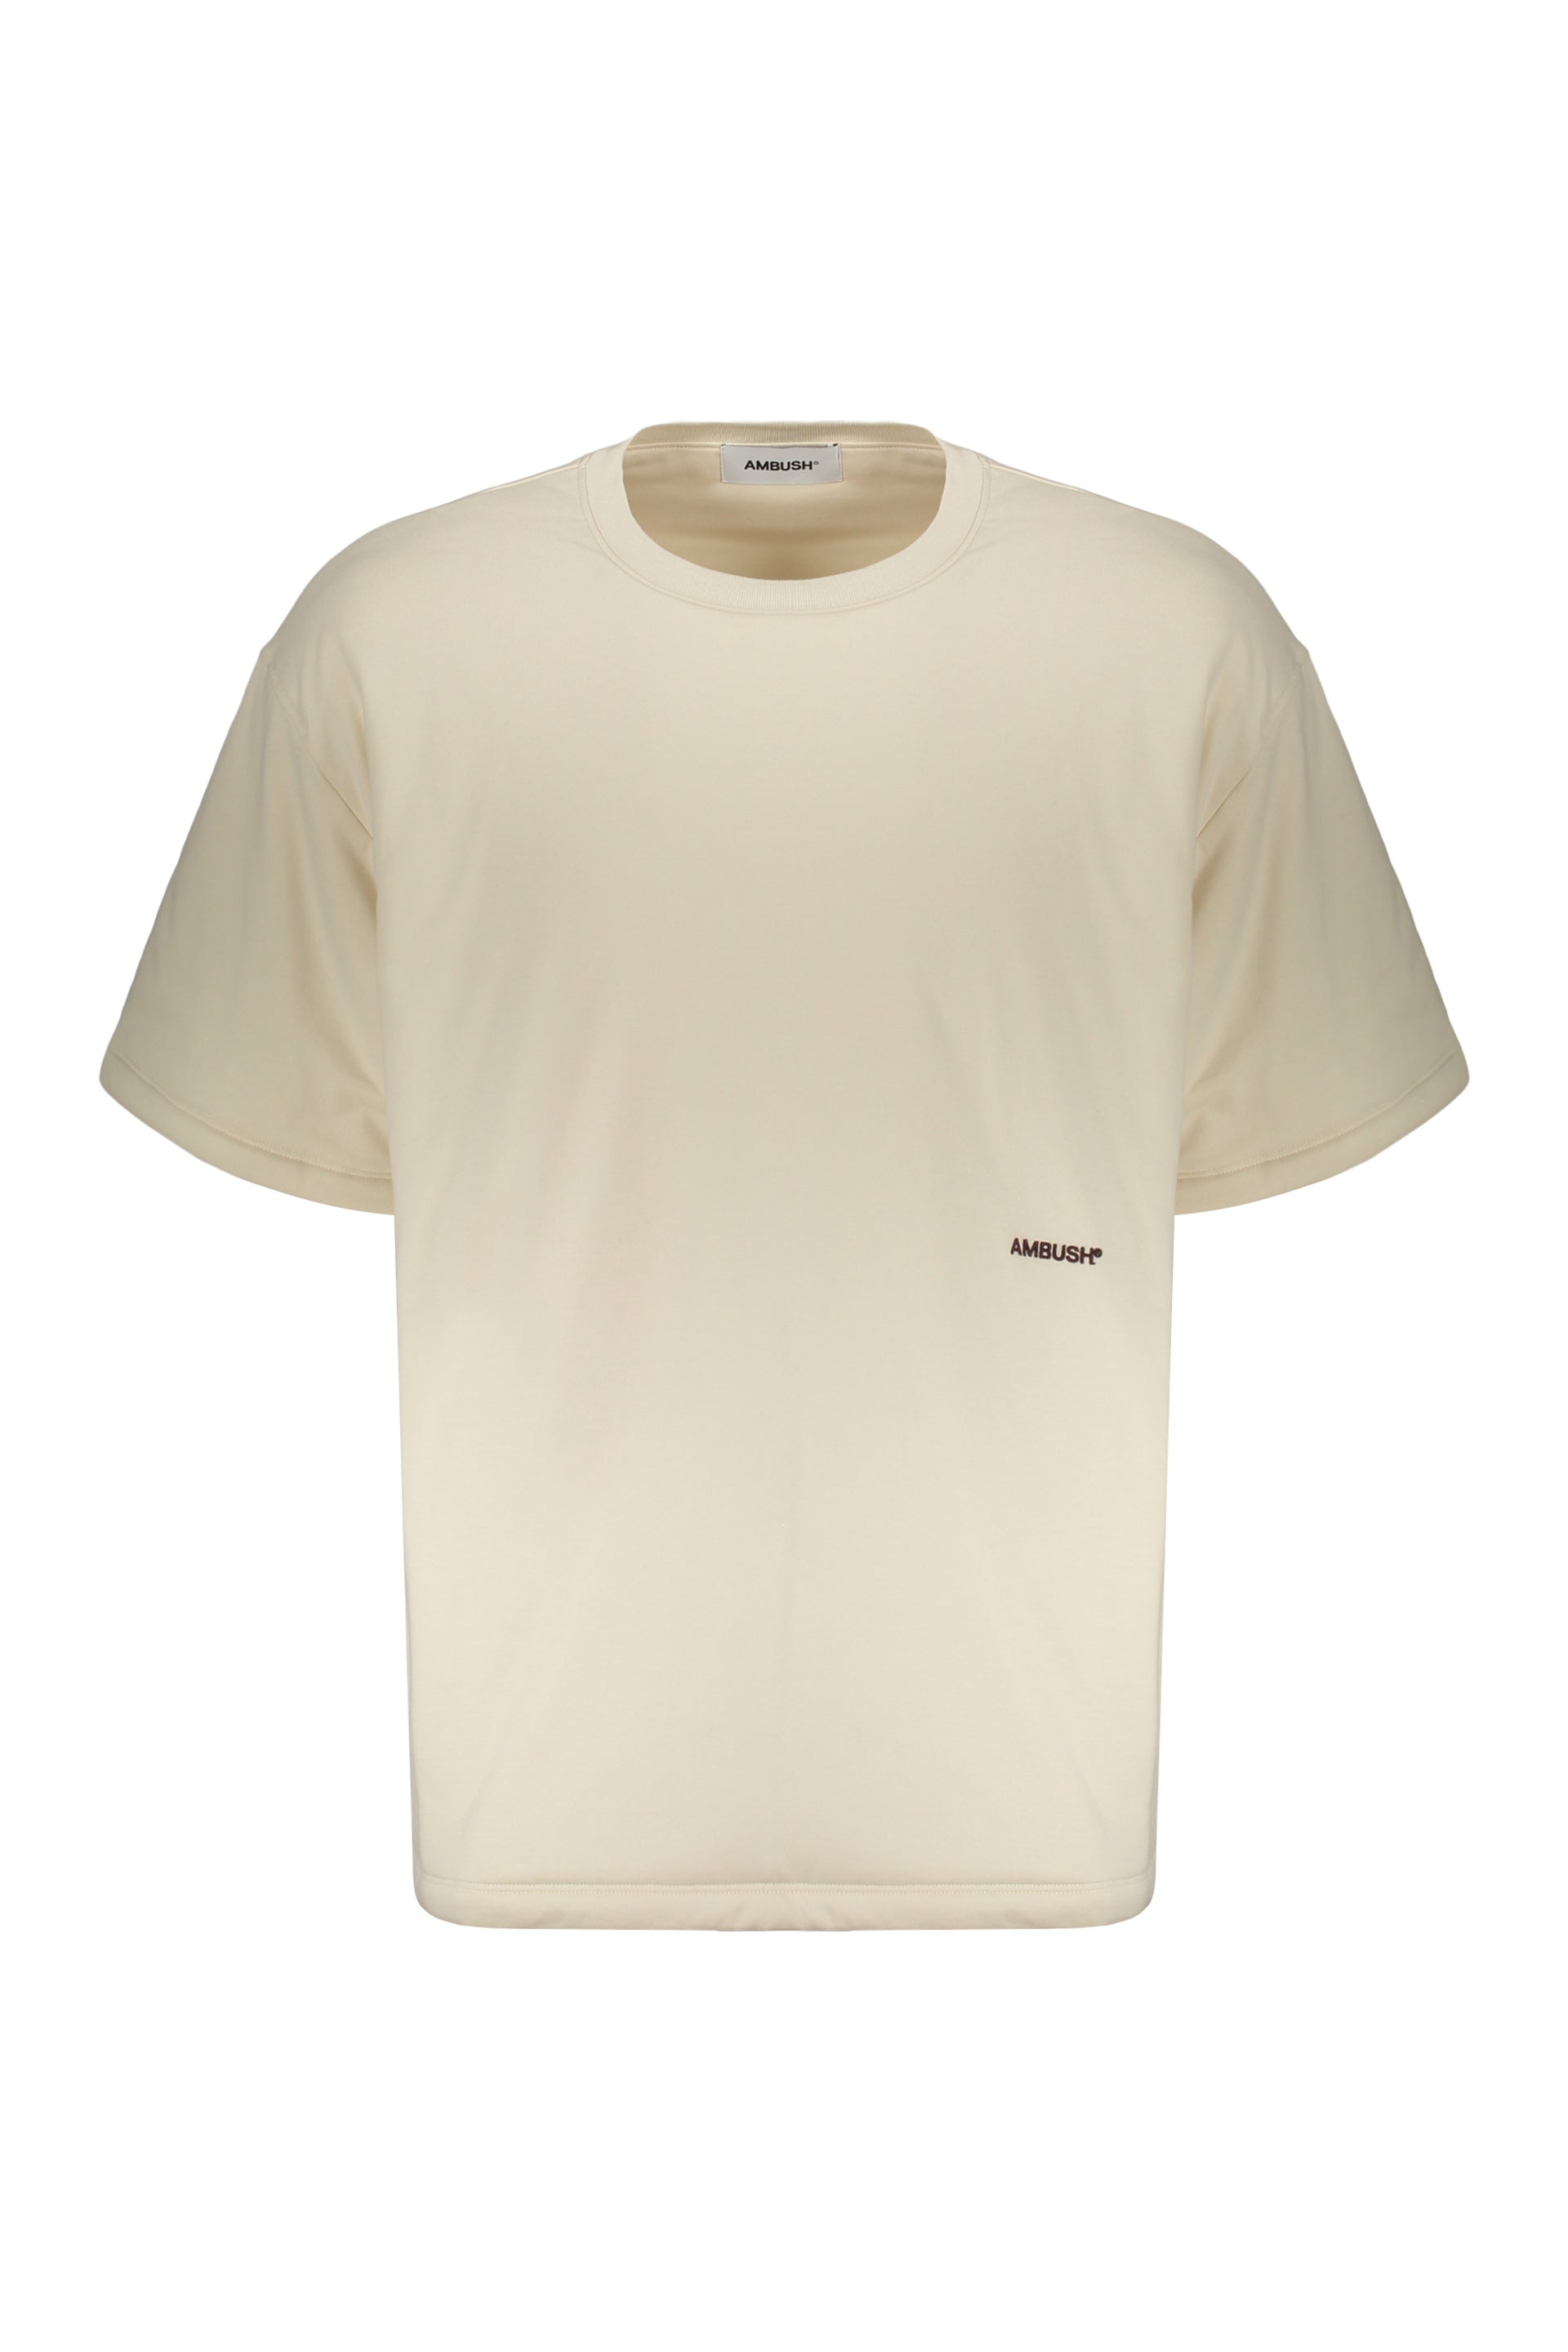 AMBUSH-OUTLET-SALE-Cotton-maxi-T-shirt-Shirts-M-ARCHIVE-COLLECTION.jpg